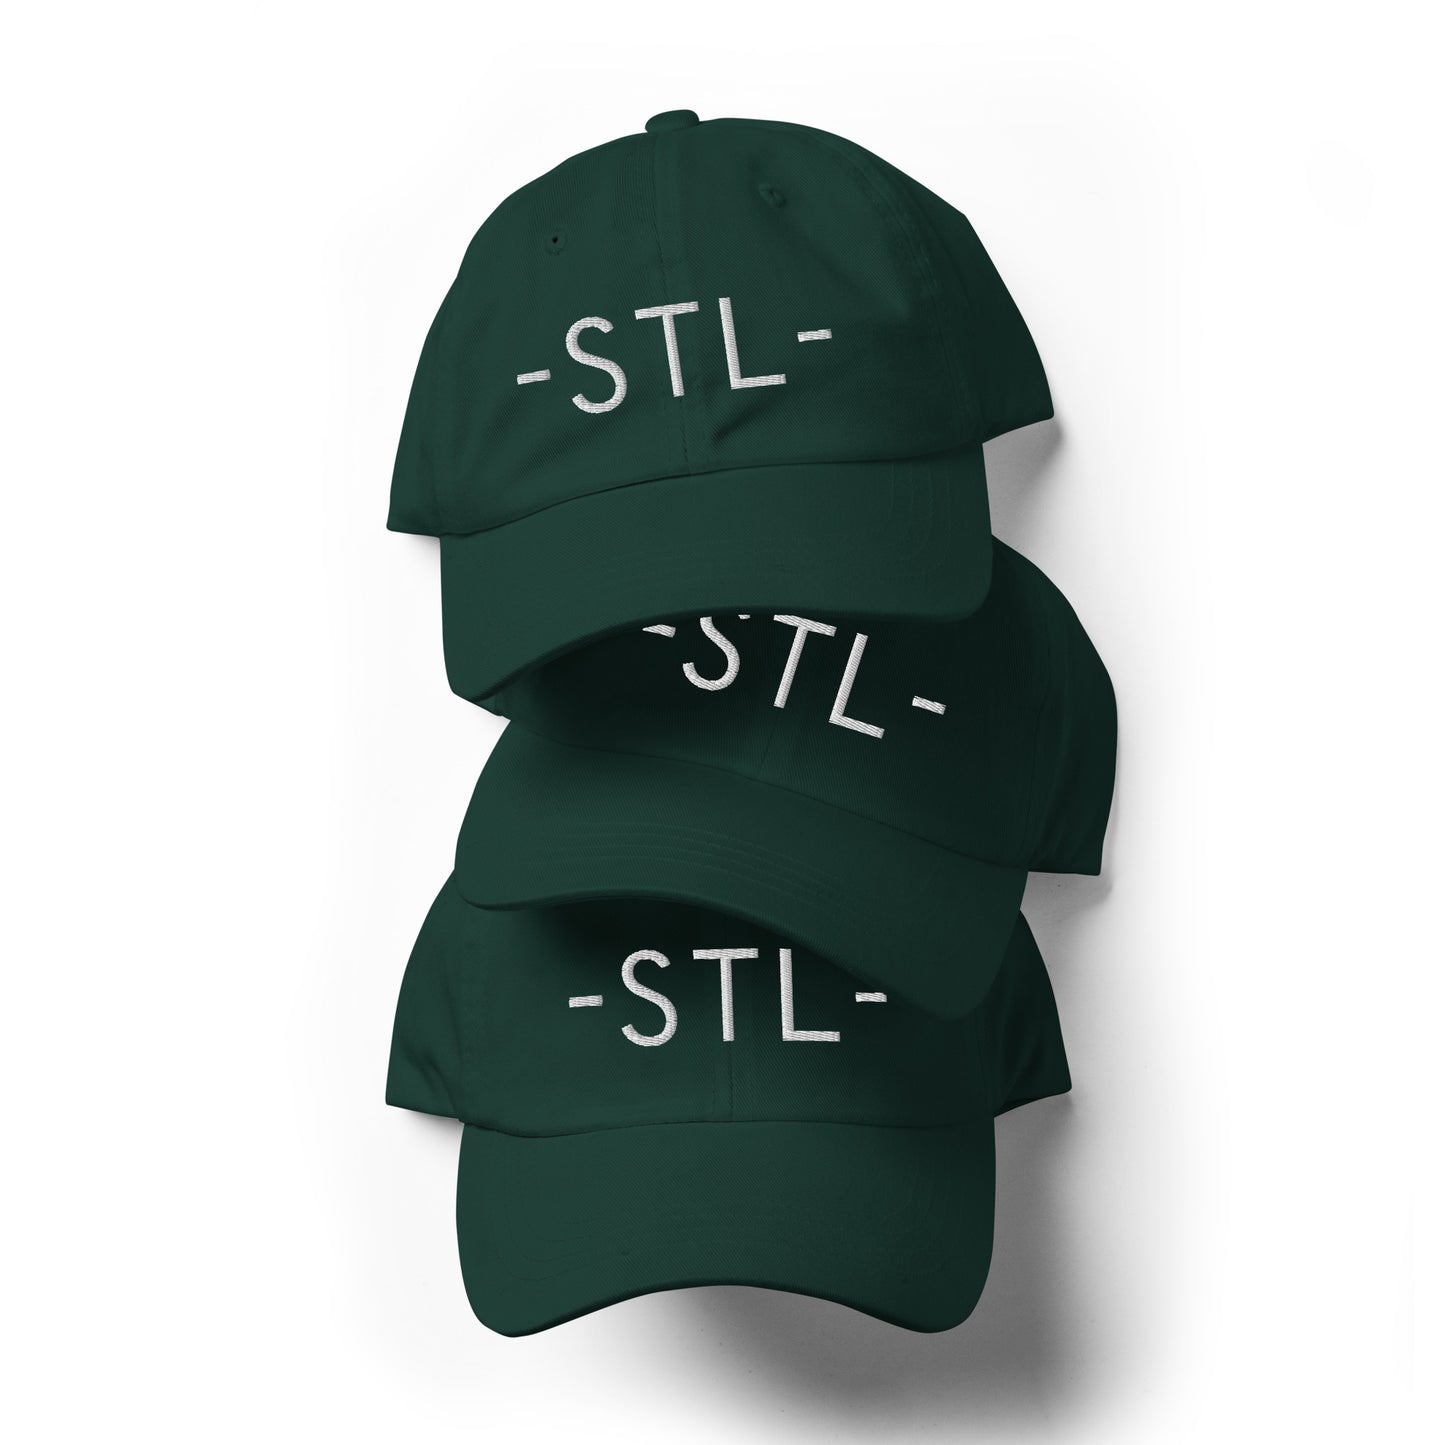 Souvenir Baseball Cap - White • STL St. Louis • YHM Designs - Image 05